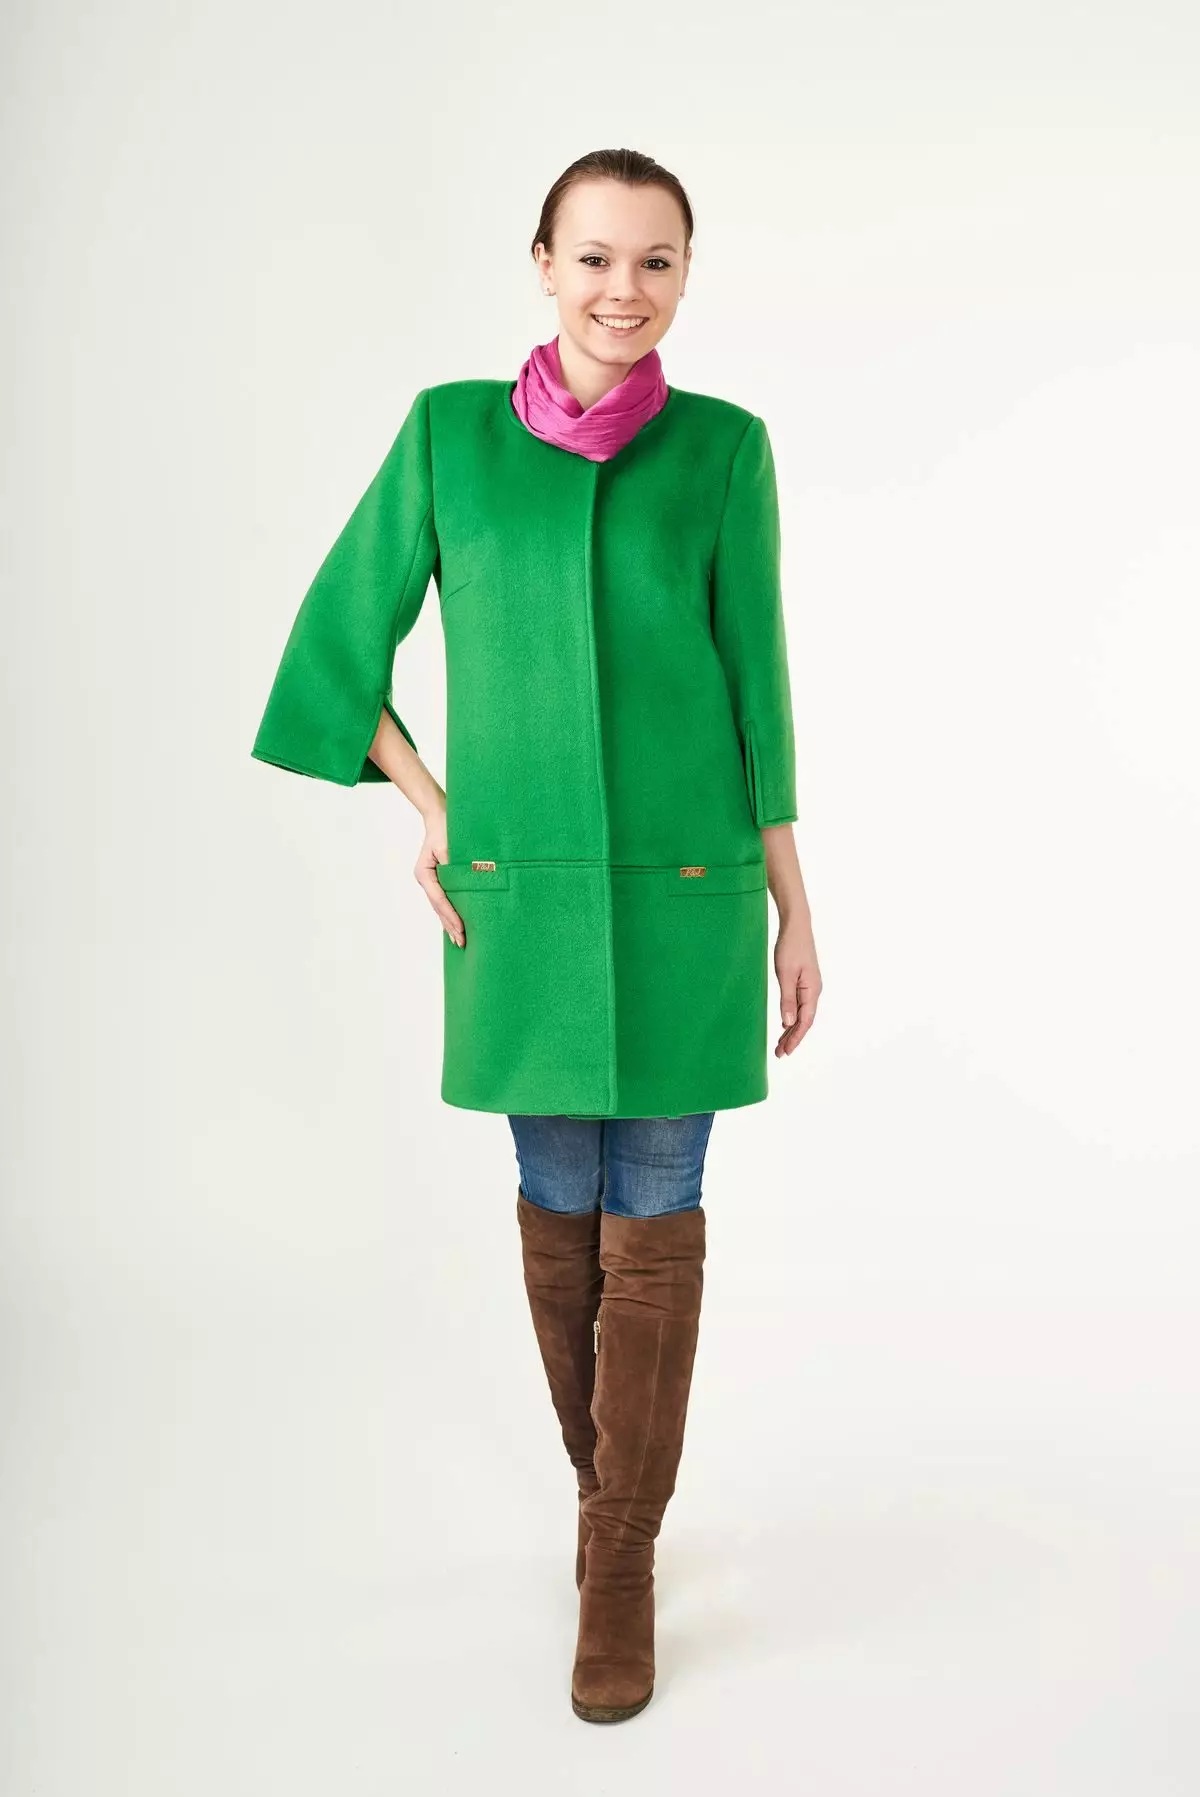 グリーンコート（122写真）を着用するもの：濃い緑、スカーフがフィット、バッグ、アクセサリー、英語の襟付きコート 601_117